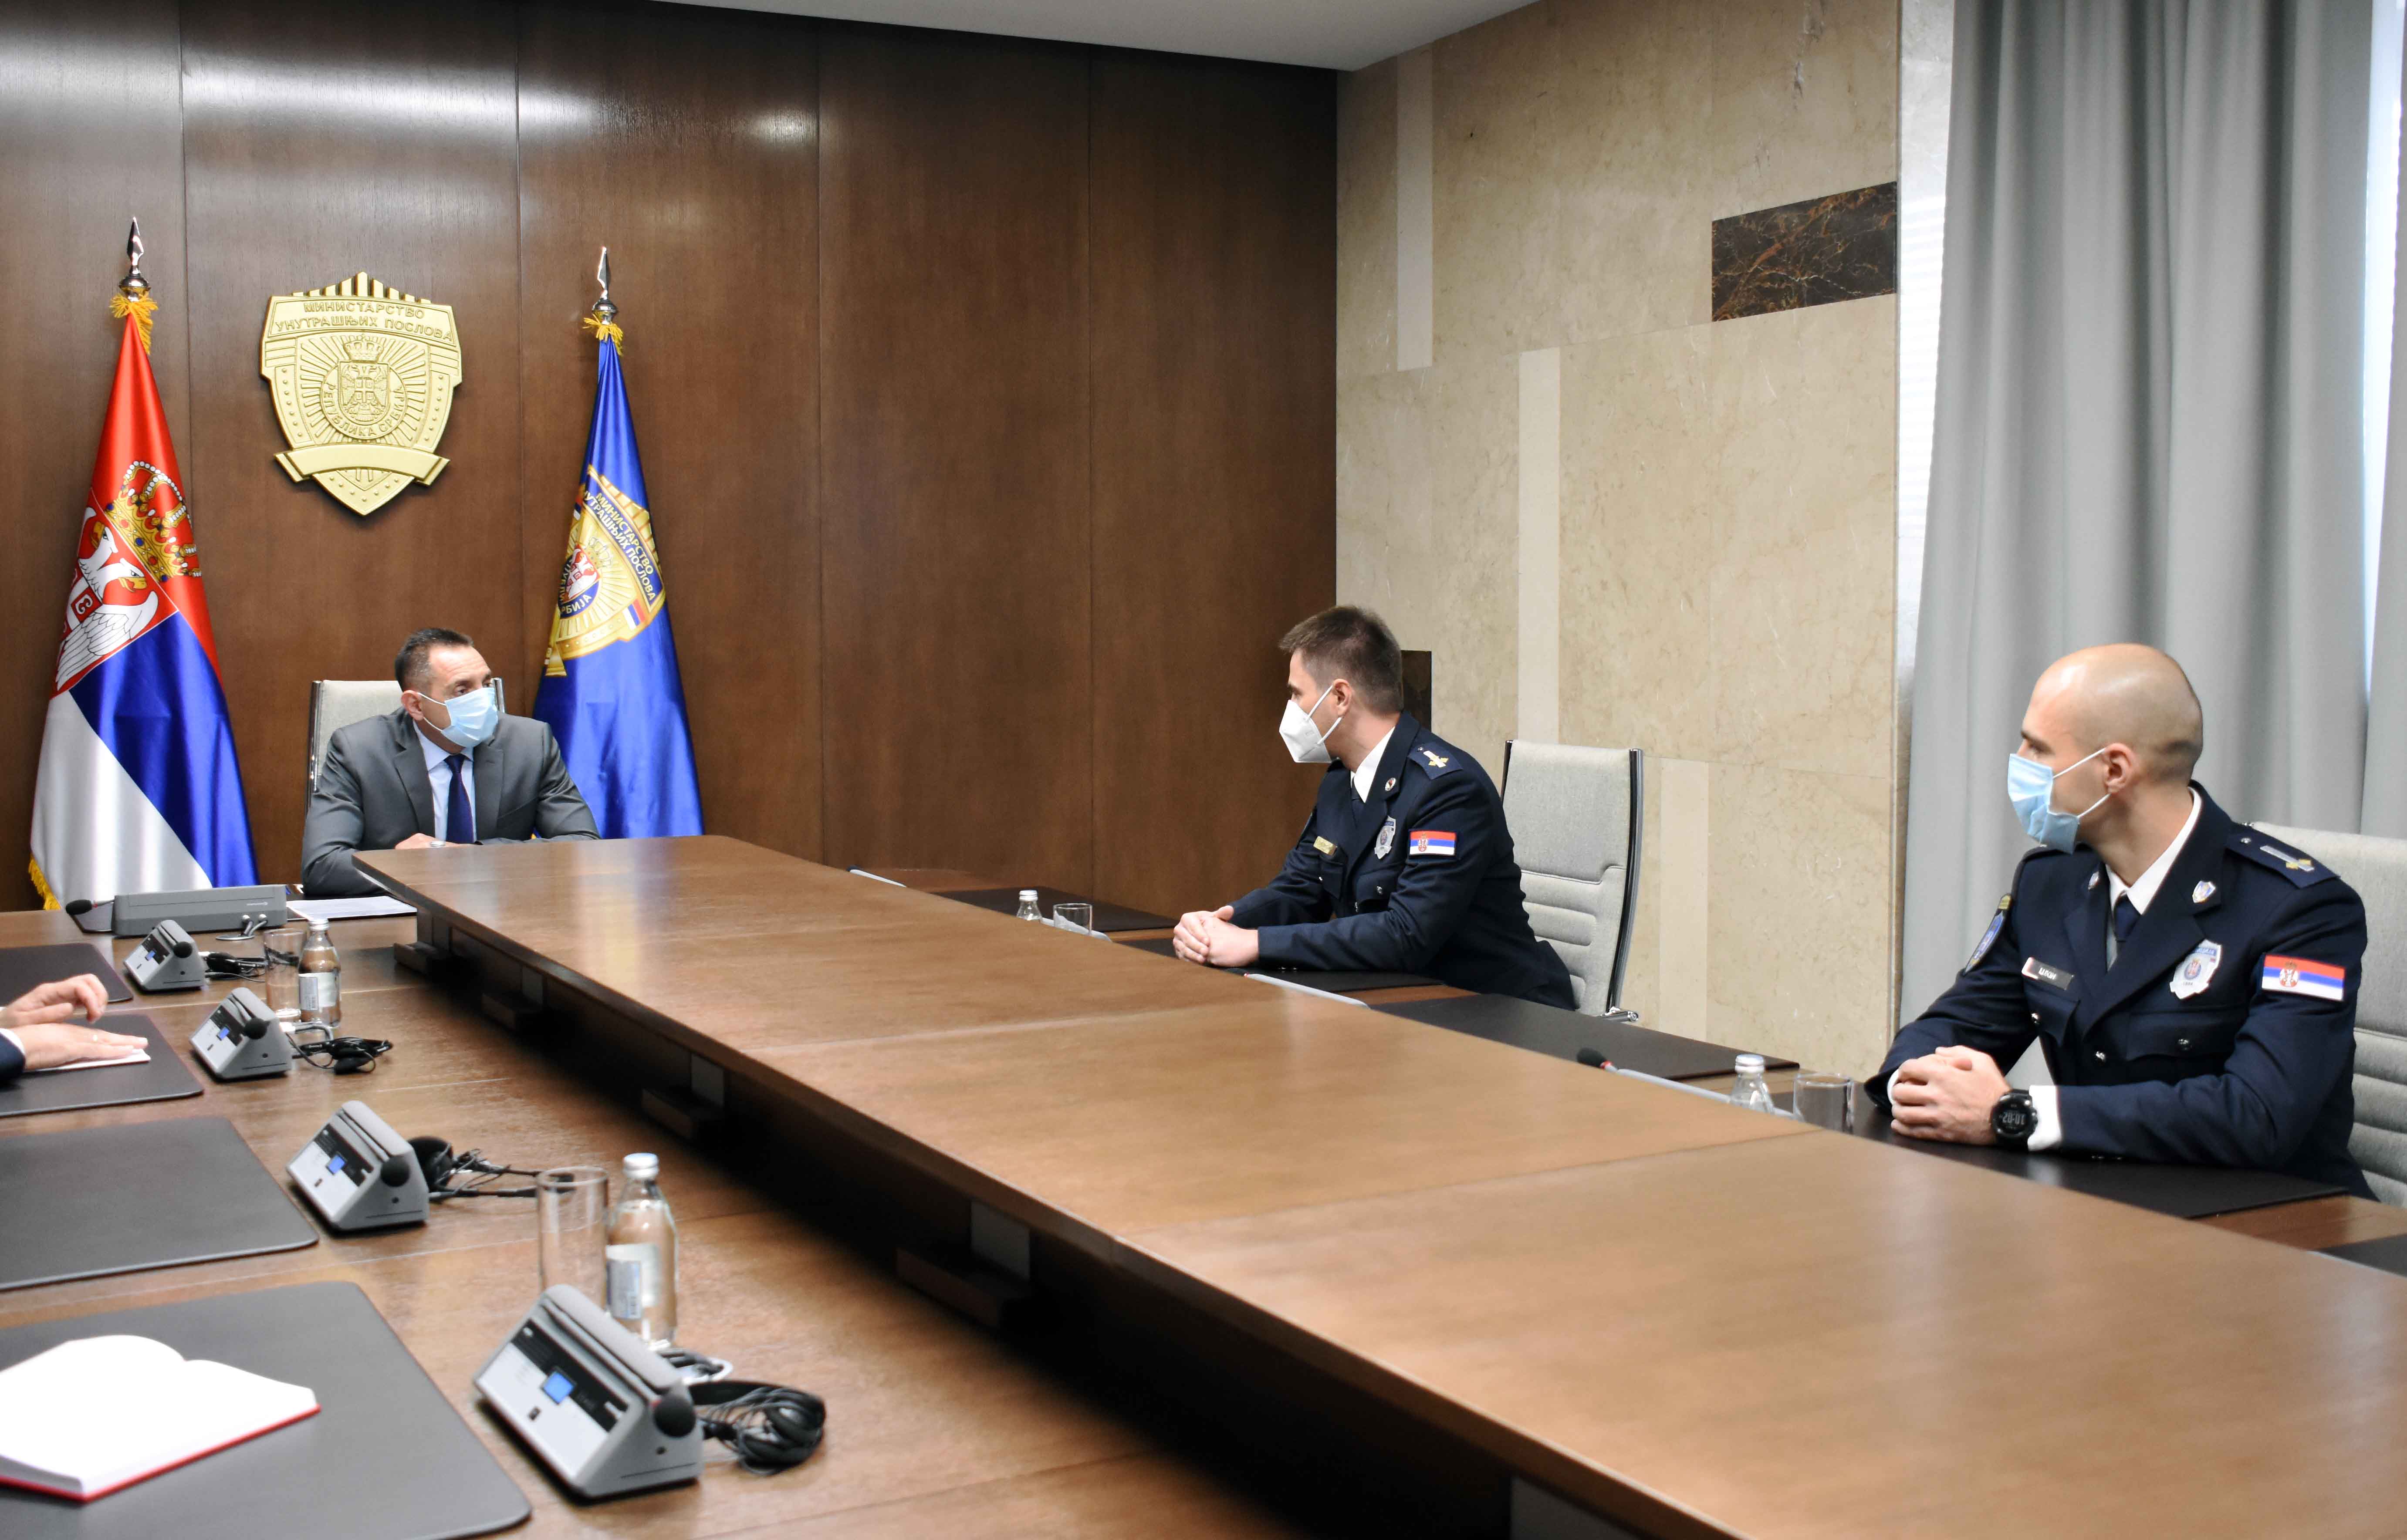 Ministar Vulin razgovarao sa pripadnicima policije koji će zameniti kolege u mirovnoj operaciji UN na Kipru